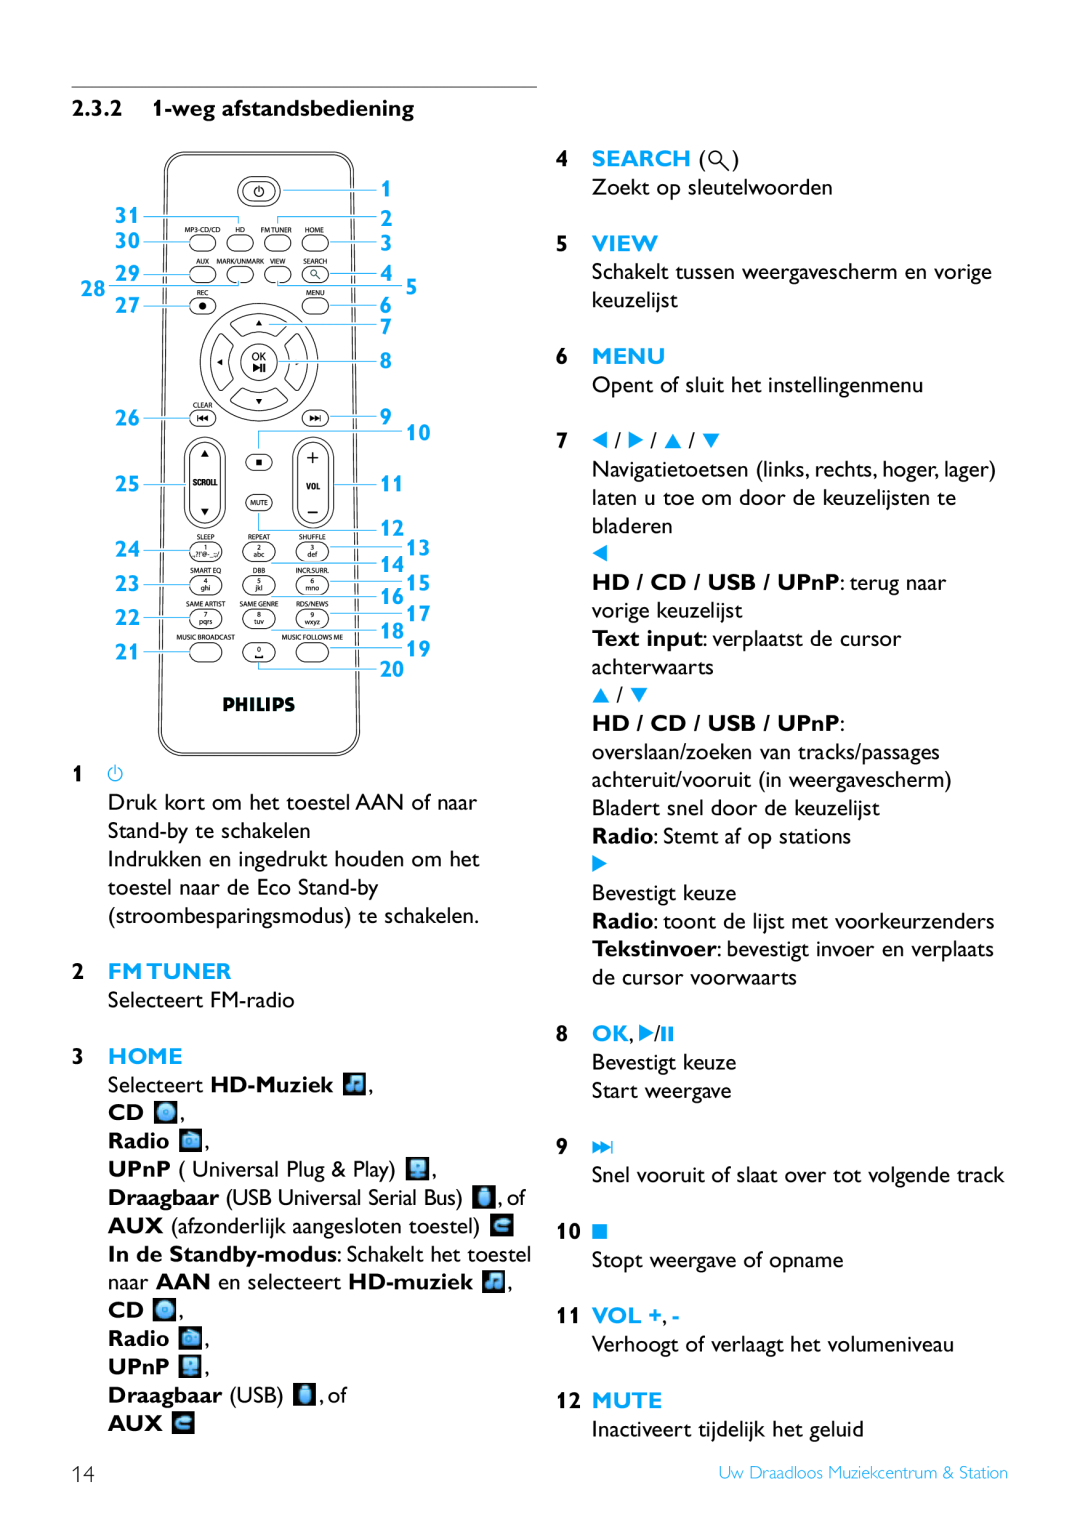 Philips WACS7500 manual wegafstandsbediening, Radio , UPnP , Draagbaar USB , of AUX, 71 / 2 / 3 